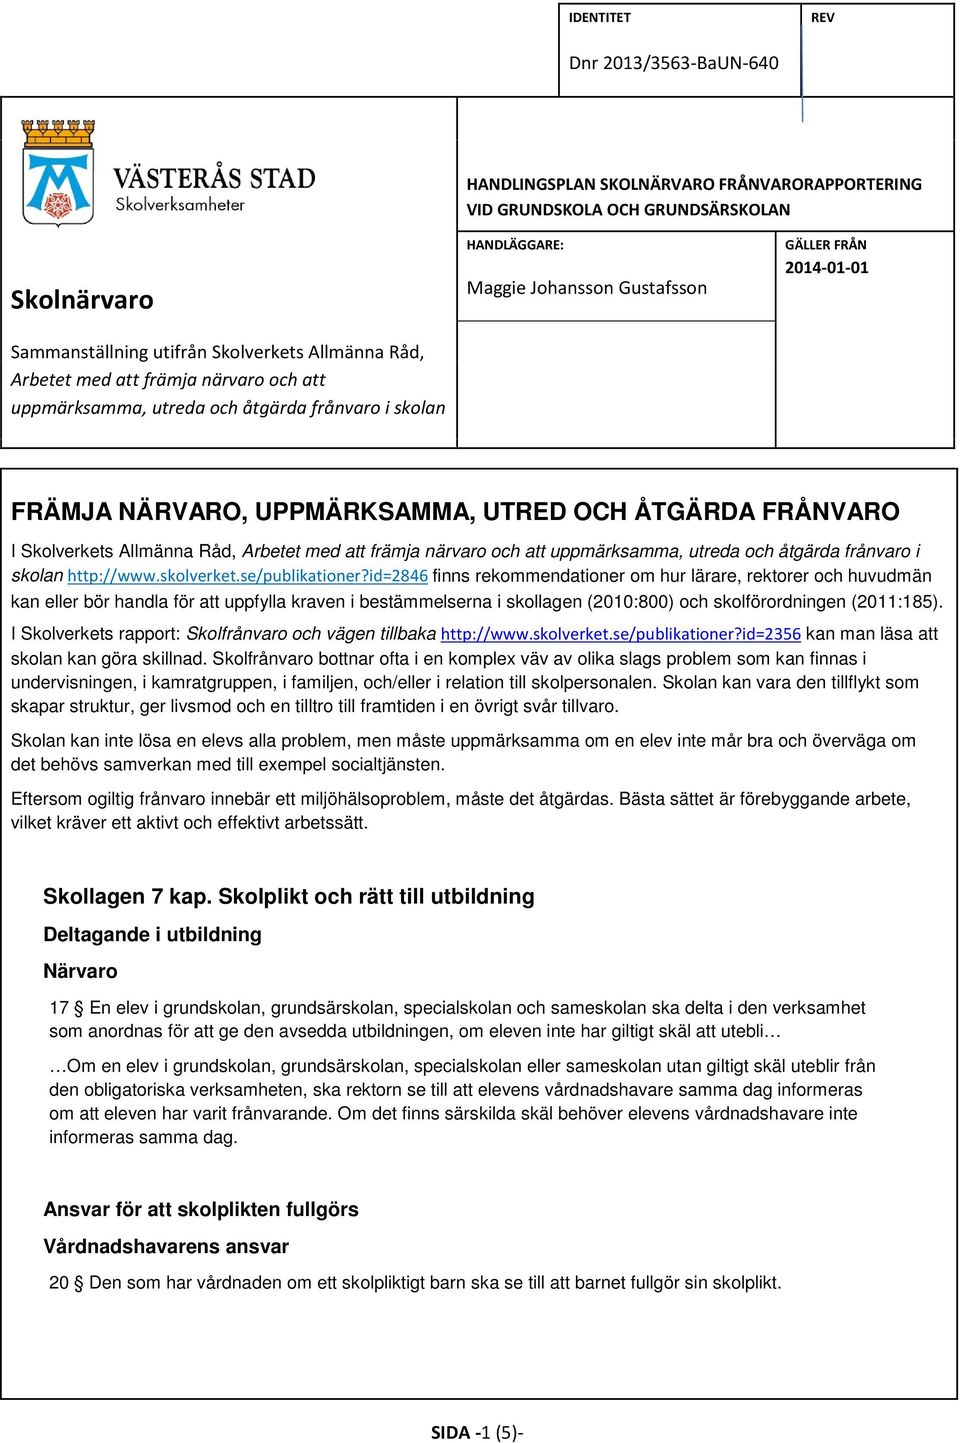 Allmänna Råd, Arbetet med att främja närvaro och att uppmärksamma, utreda och åtgärda frånvaro i skolan http://www.skolverket.se/publikationer?